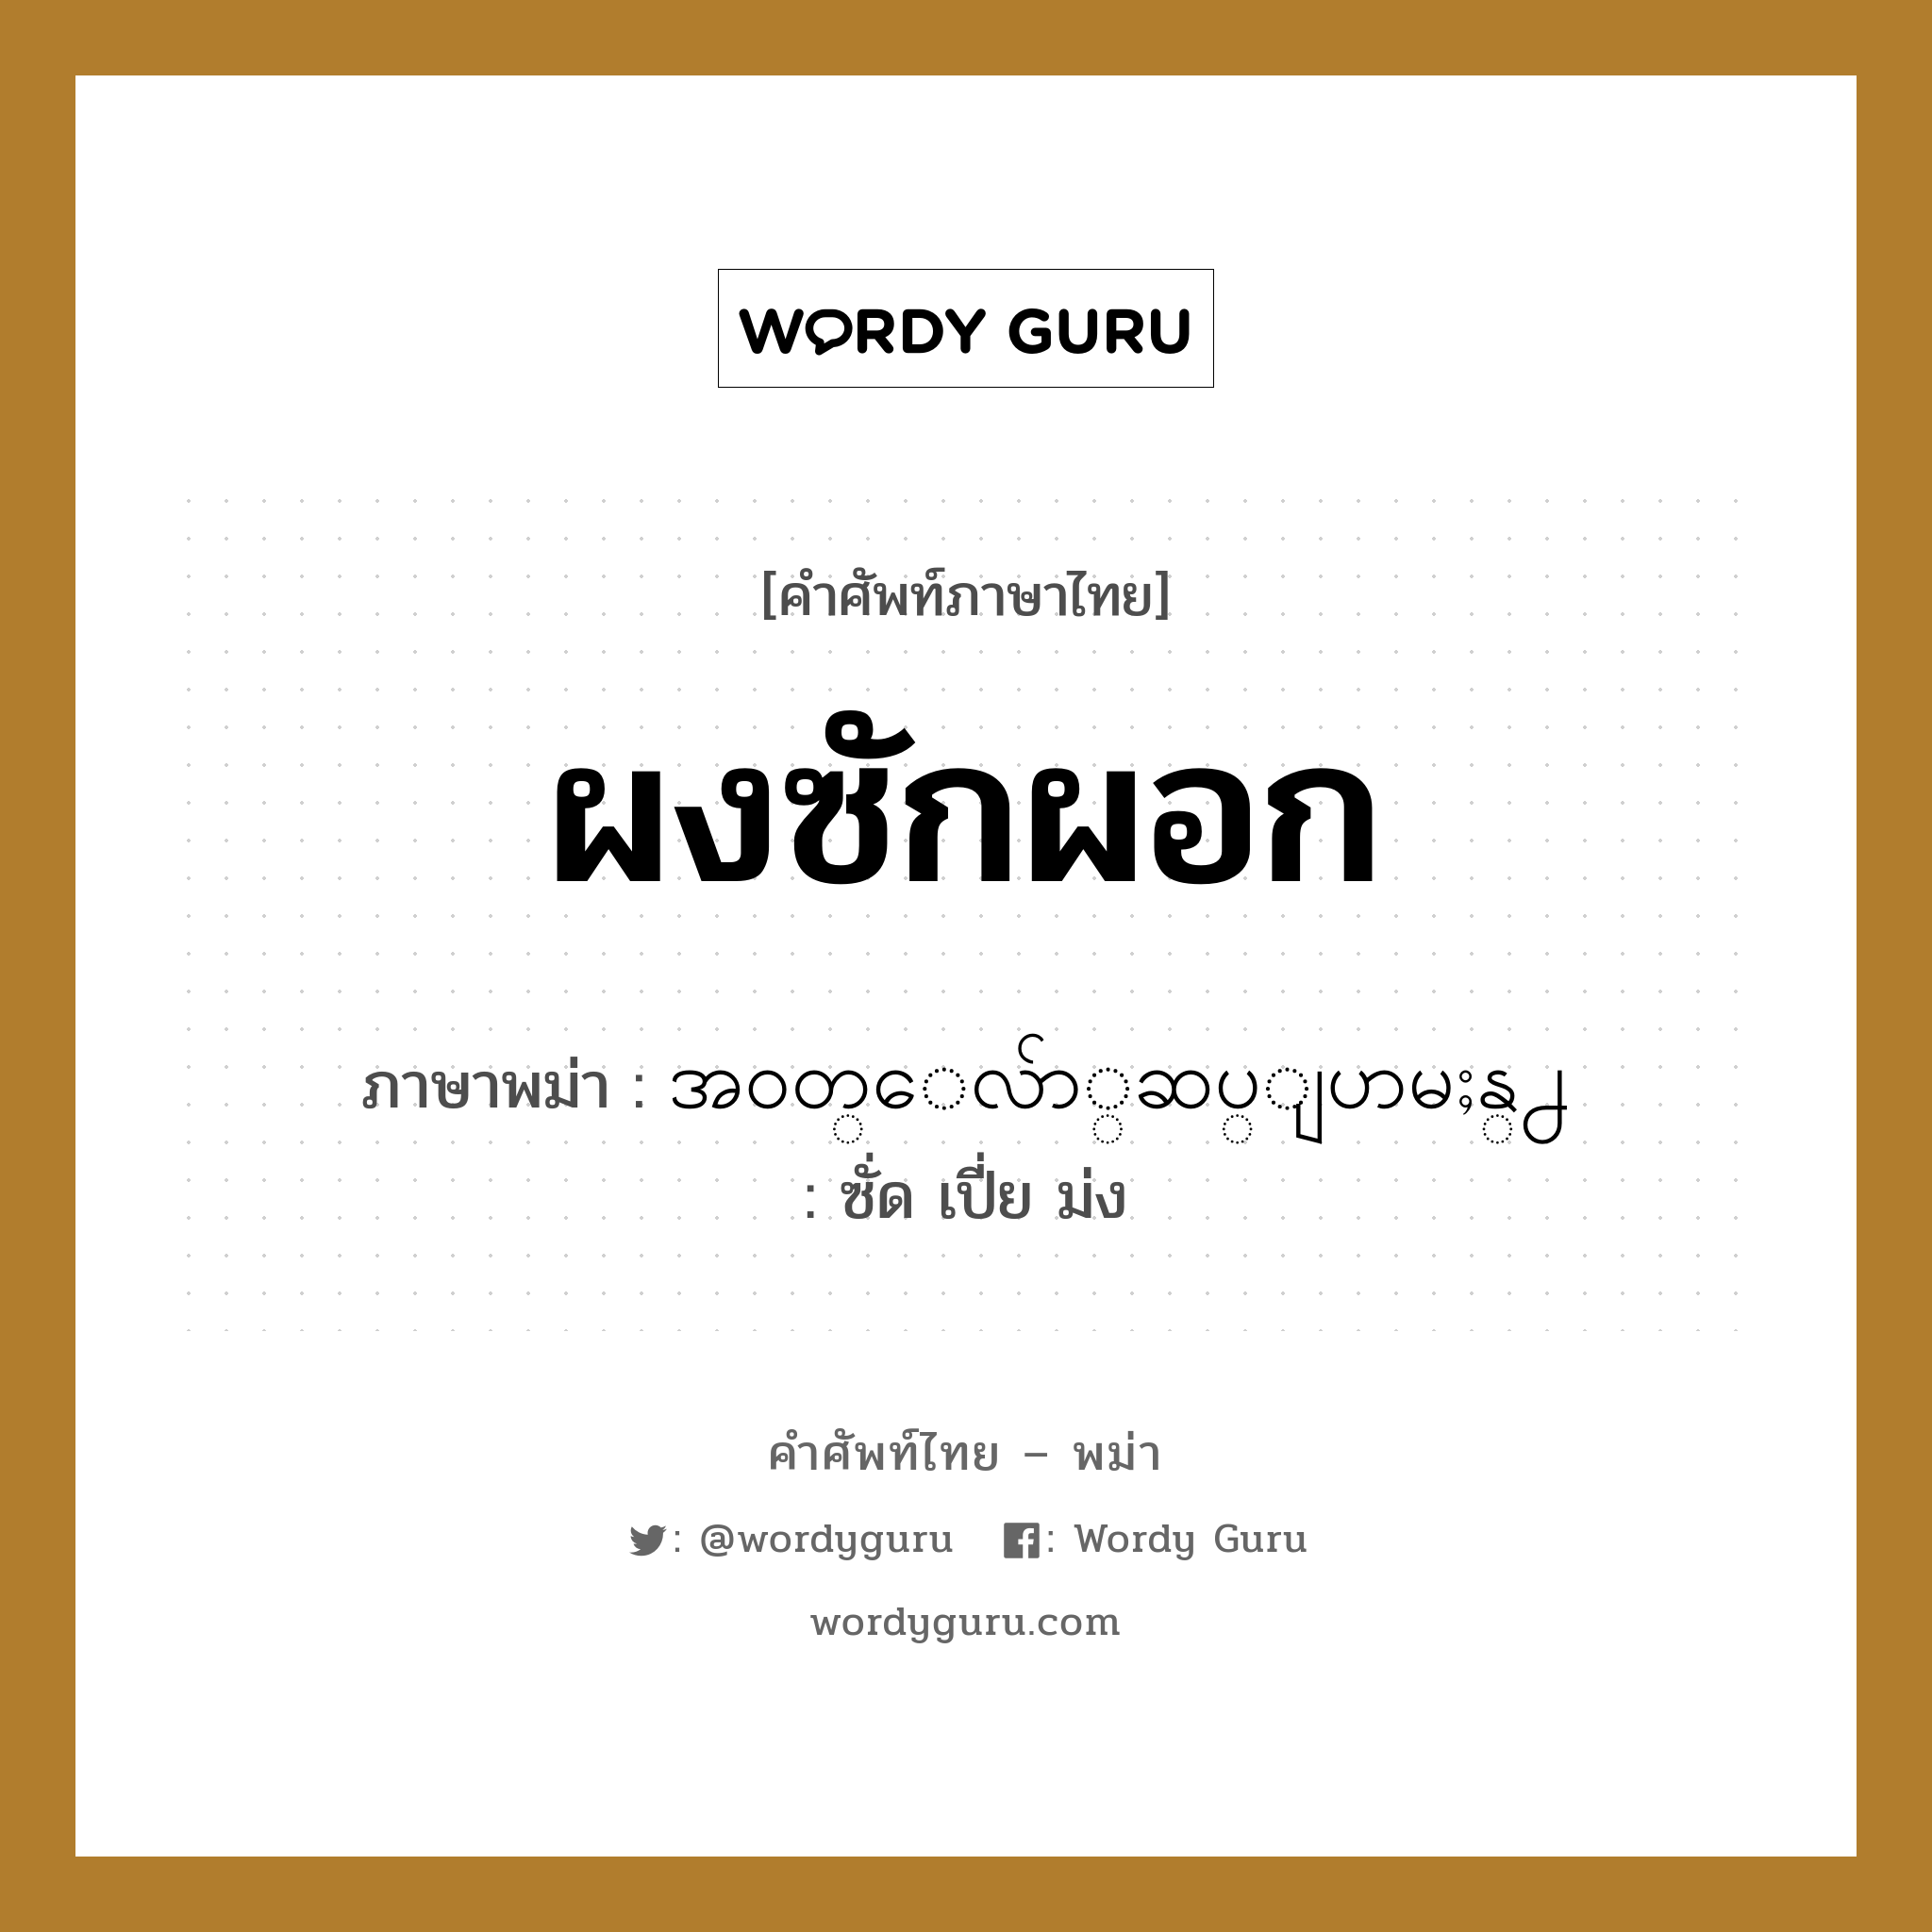 ผงซักผอก ภาษาพม่าคืออะไร, คำศัพท์ภาษาไทย - พม่า ผงซักผอก ภาษาพม่า အ၀တ္ေလ်ာ္ဆပ္ျပာမႈန္႕ หมวด ของใช้ในห้องน้ำ ซั่ด เปี่ย ม่ง หมวด ของใช้ในห้องน้ำ